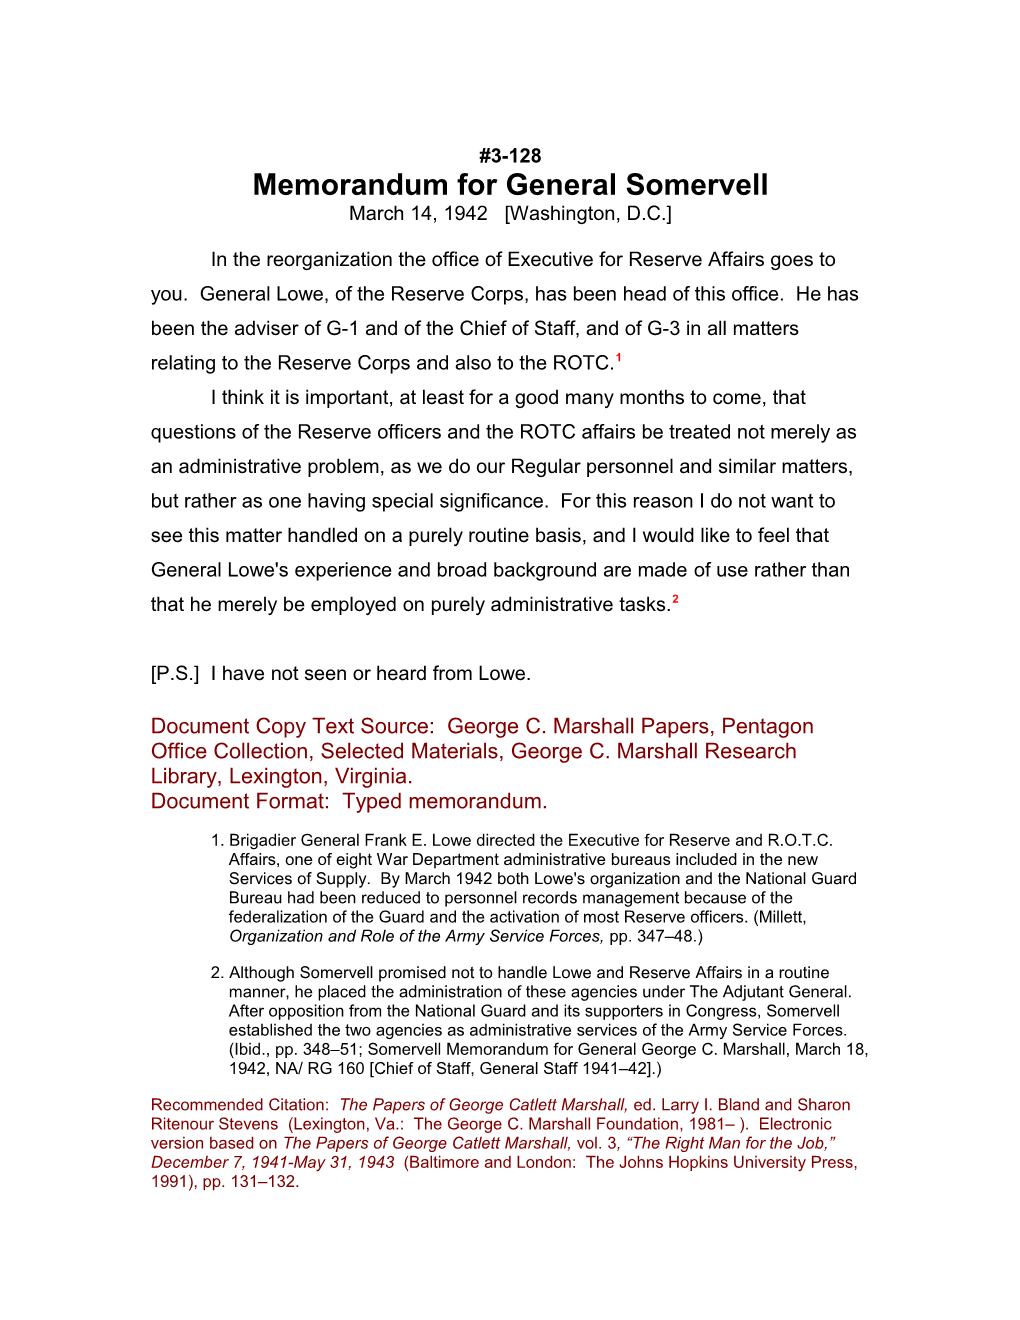 Memorandum for General Somervell